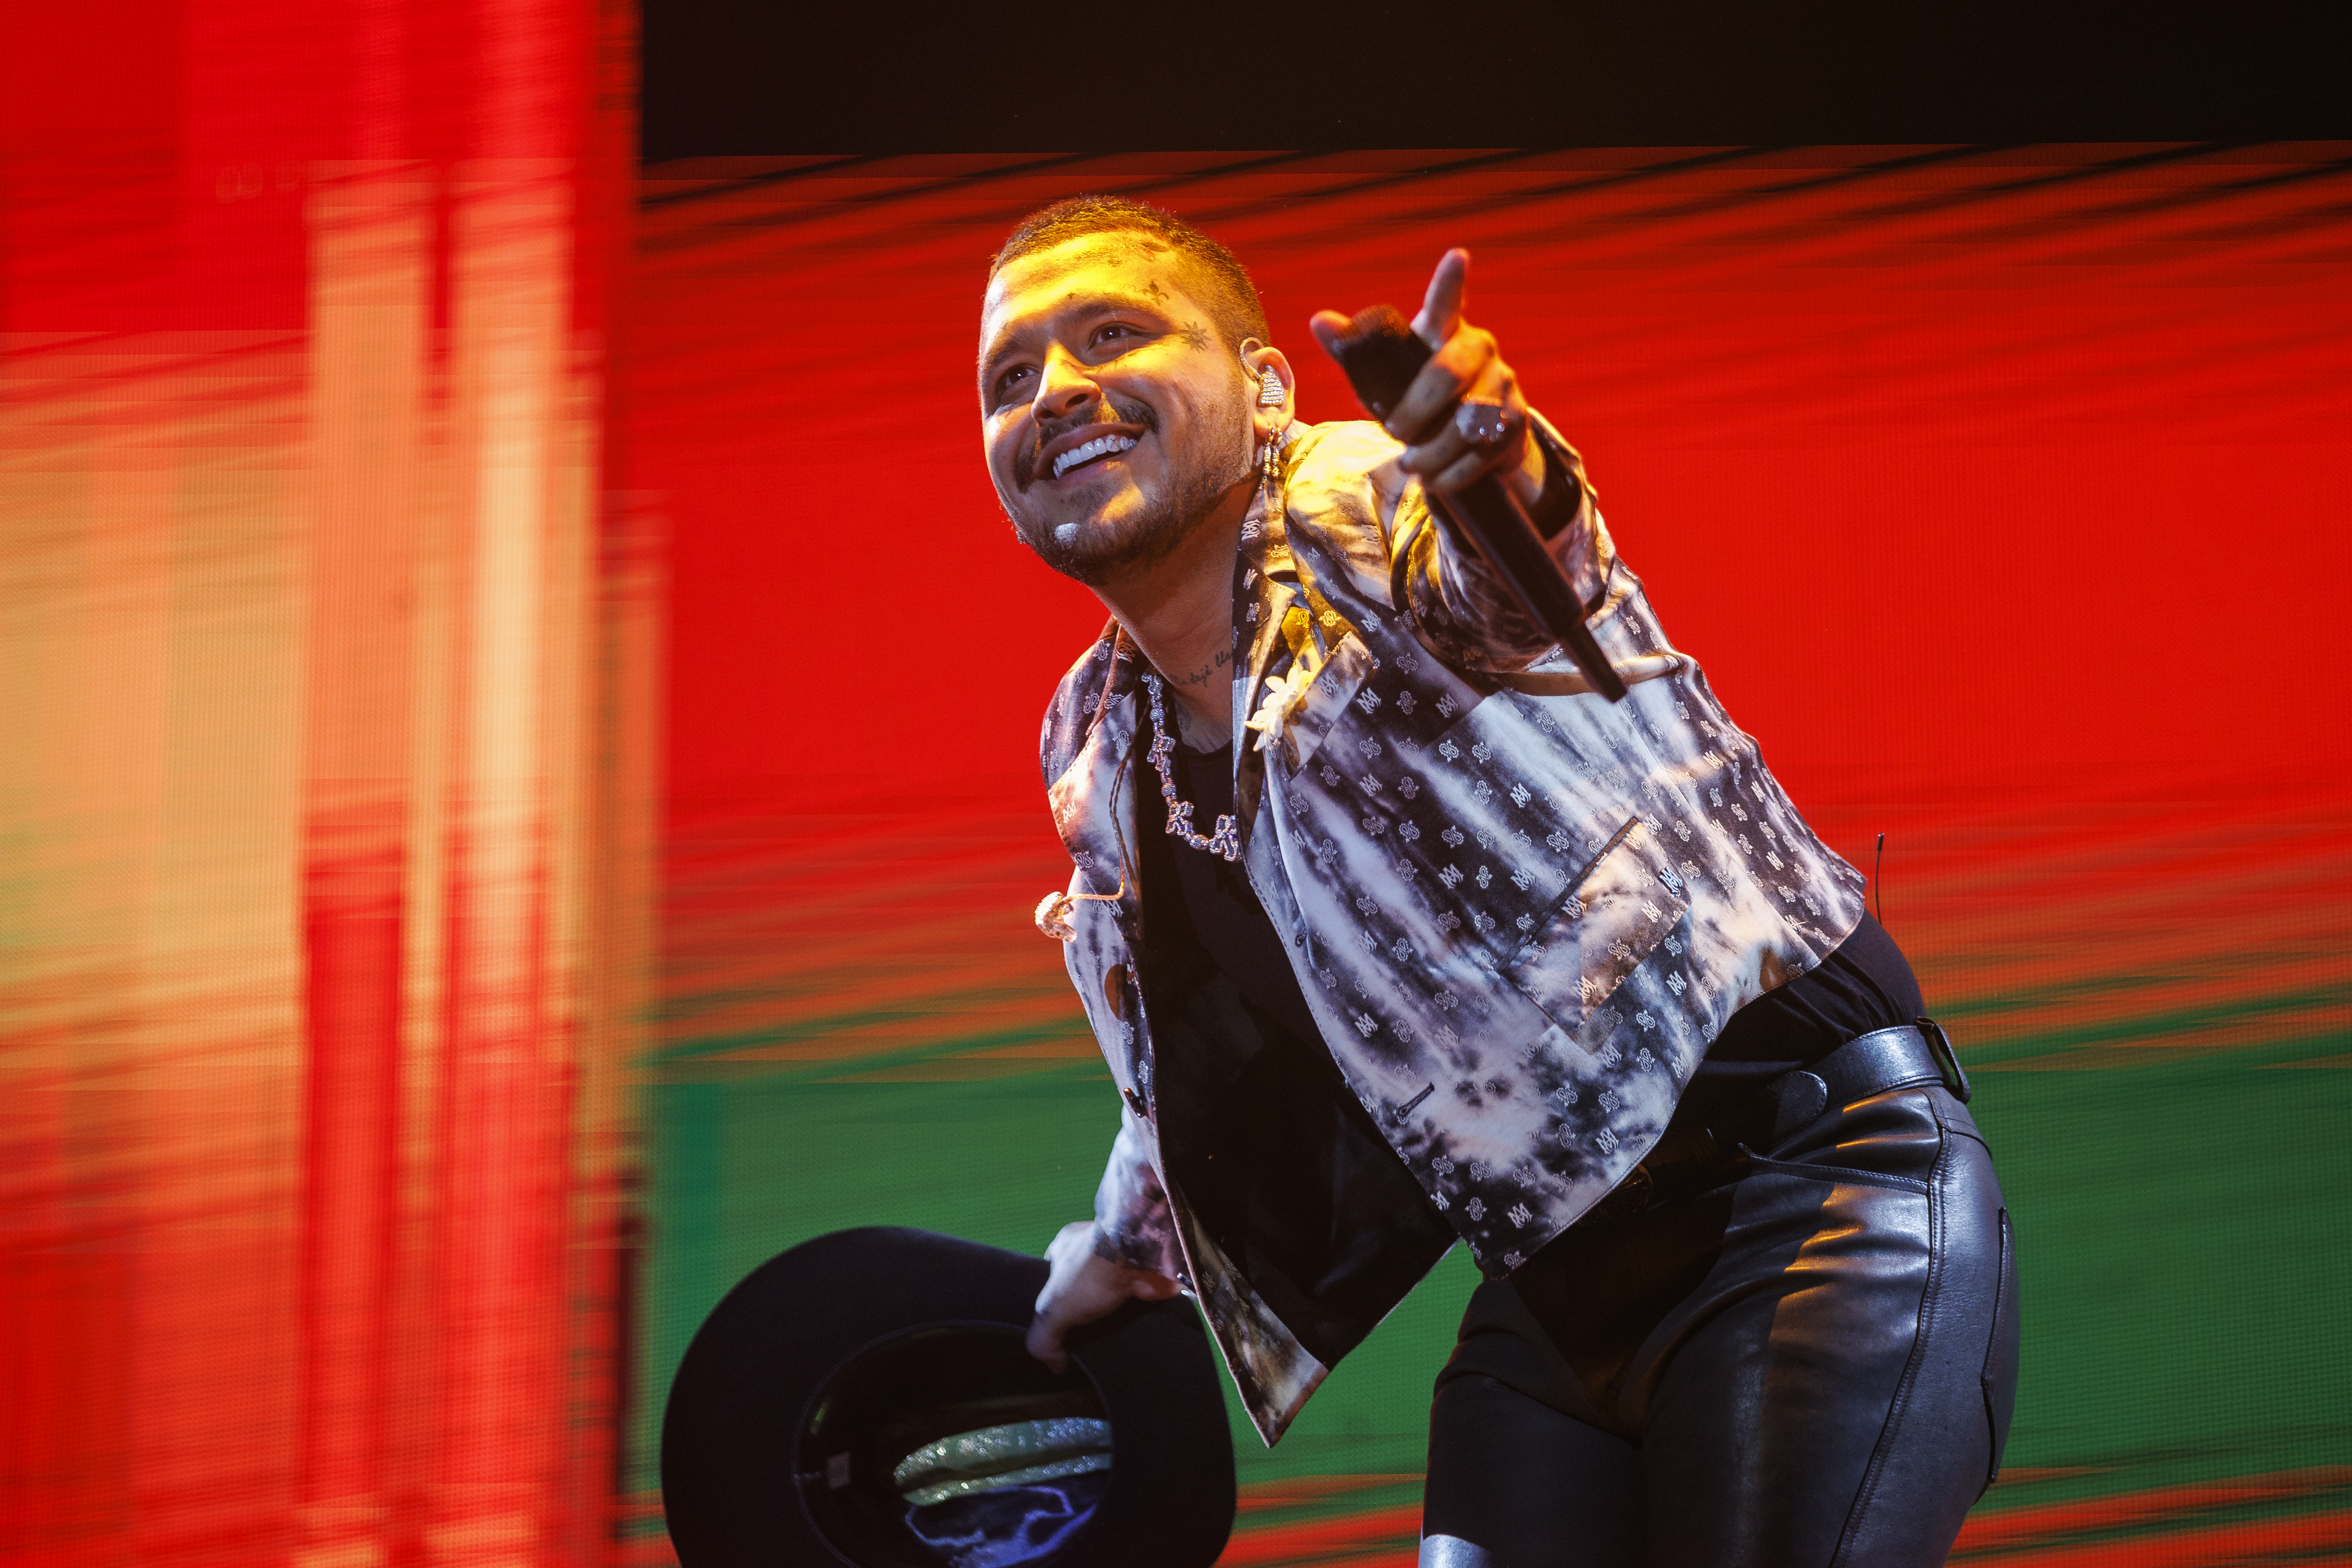 El compositor y cantante mexicano Christian Nodal durante el concierto que ofreció en Madrid, España (Foto Prensa Libre: EFE/Rodrigo Jiménez)